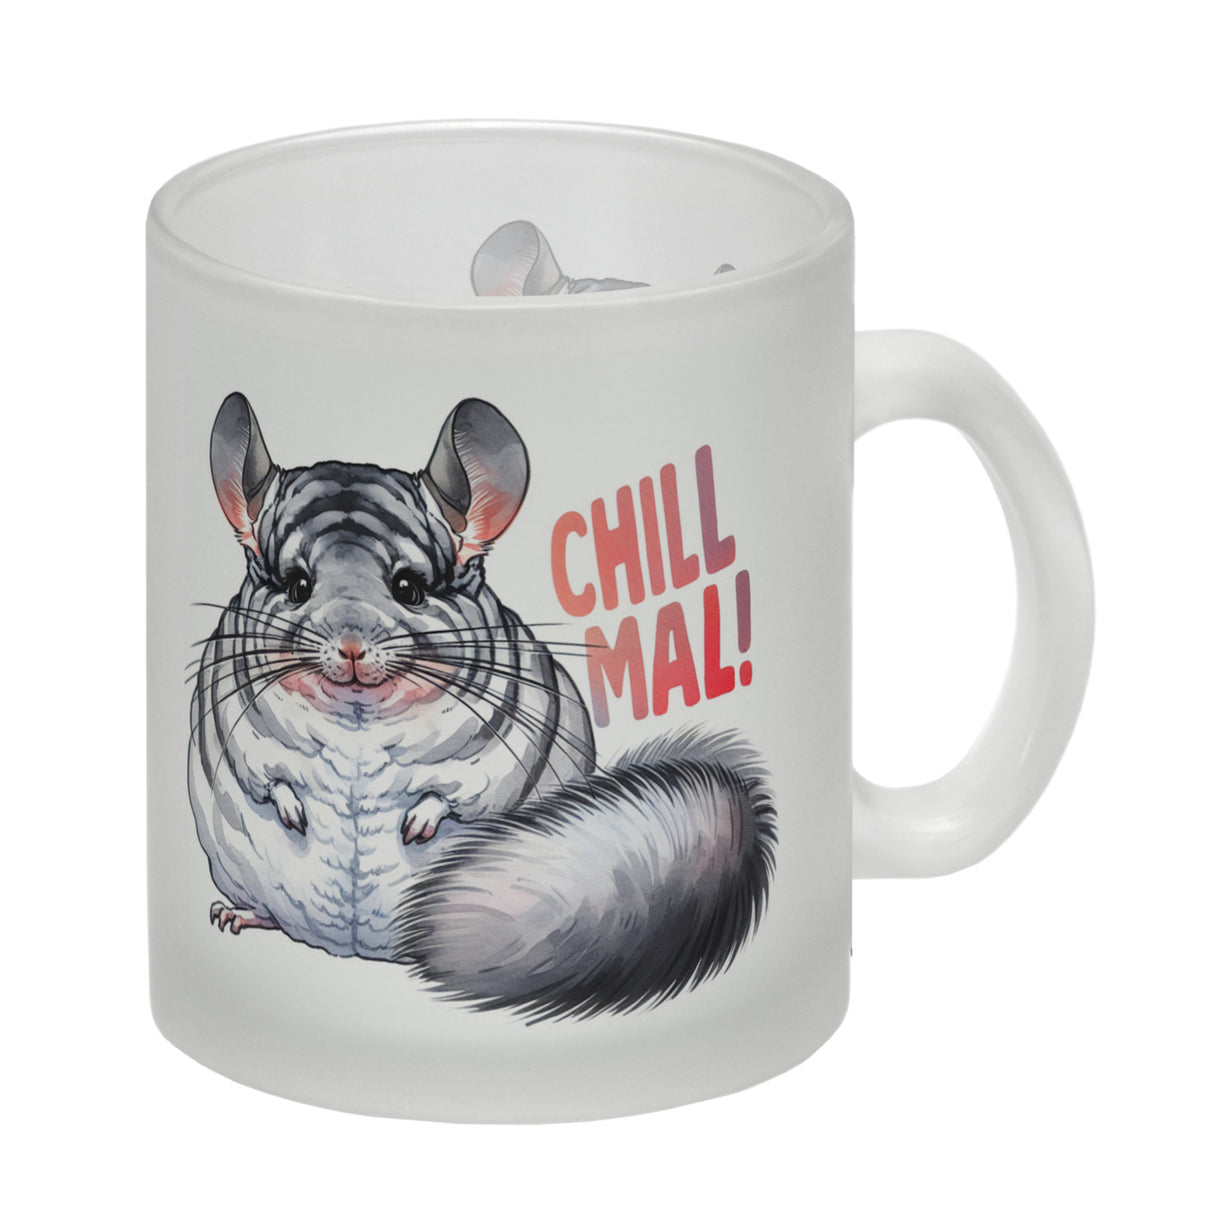 Pummeliges Chinchilla Kaffeebecher mit Spruch Chill mal